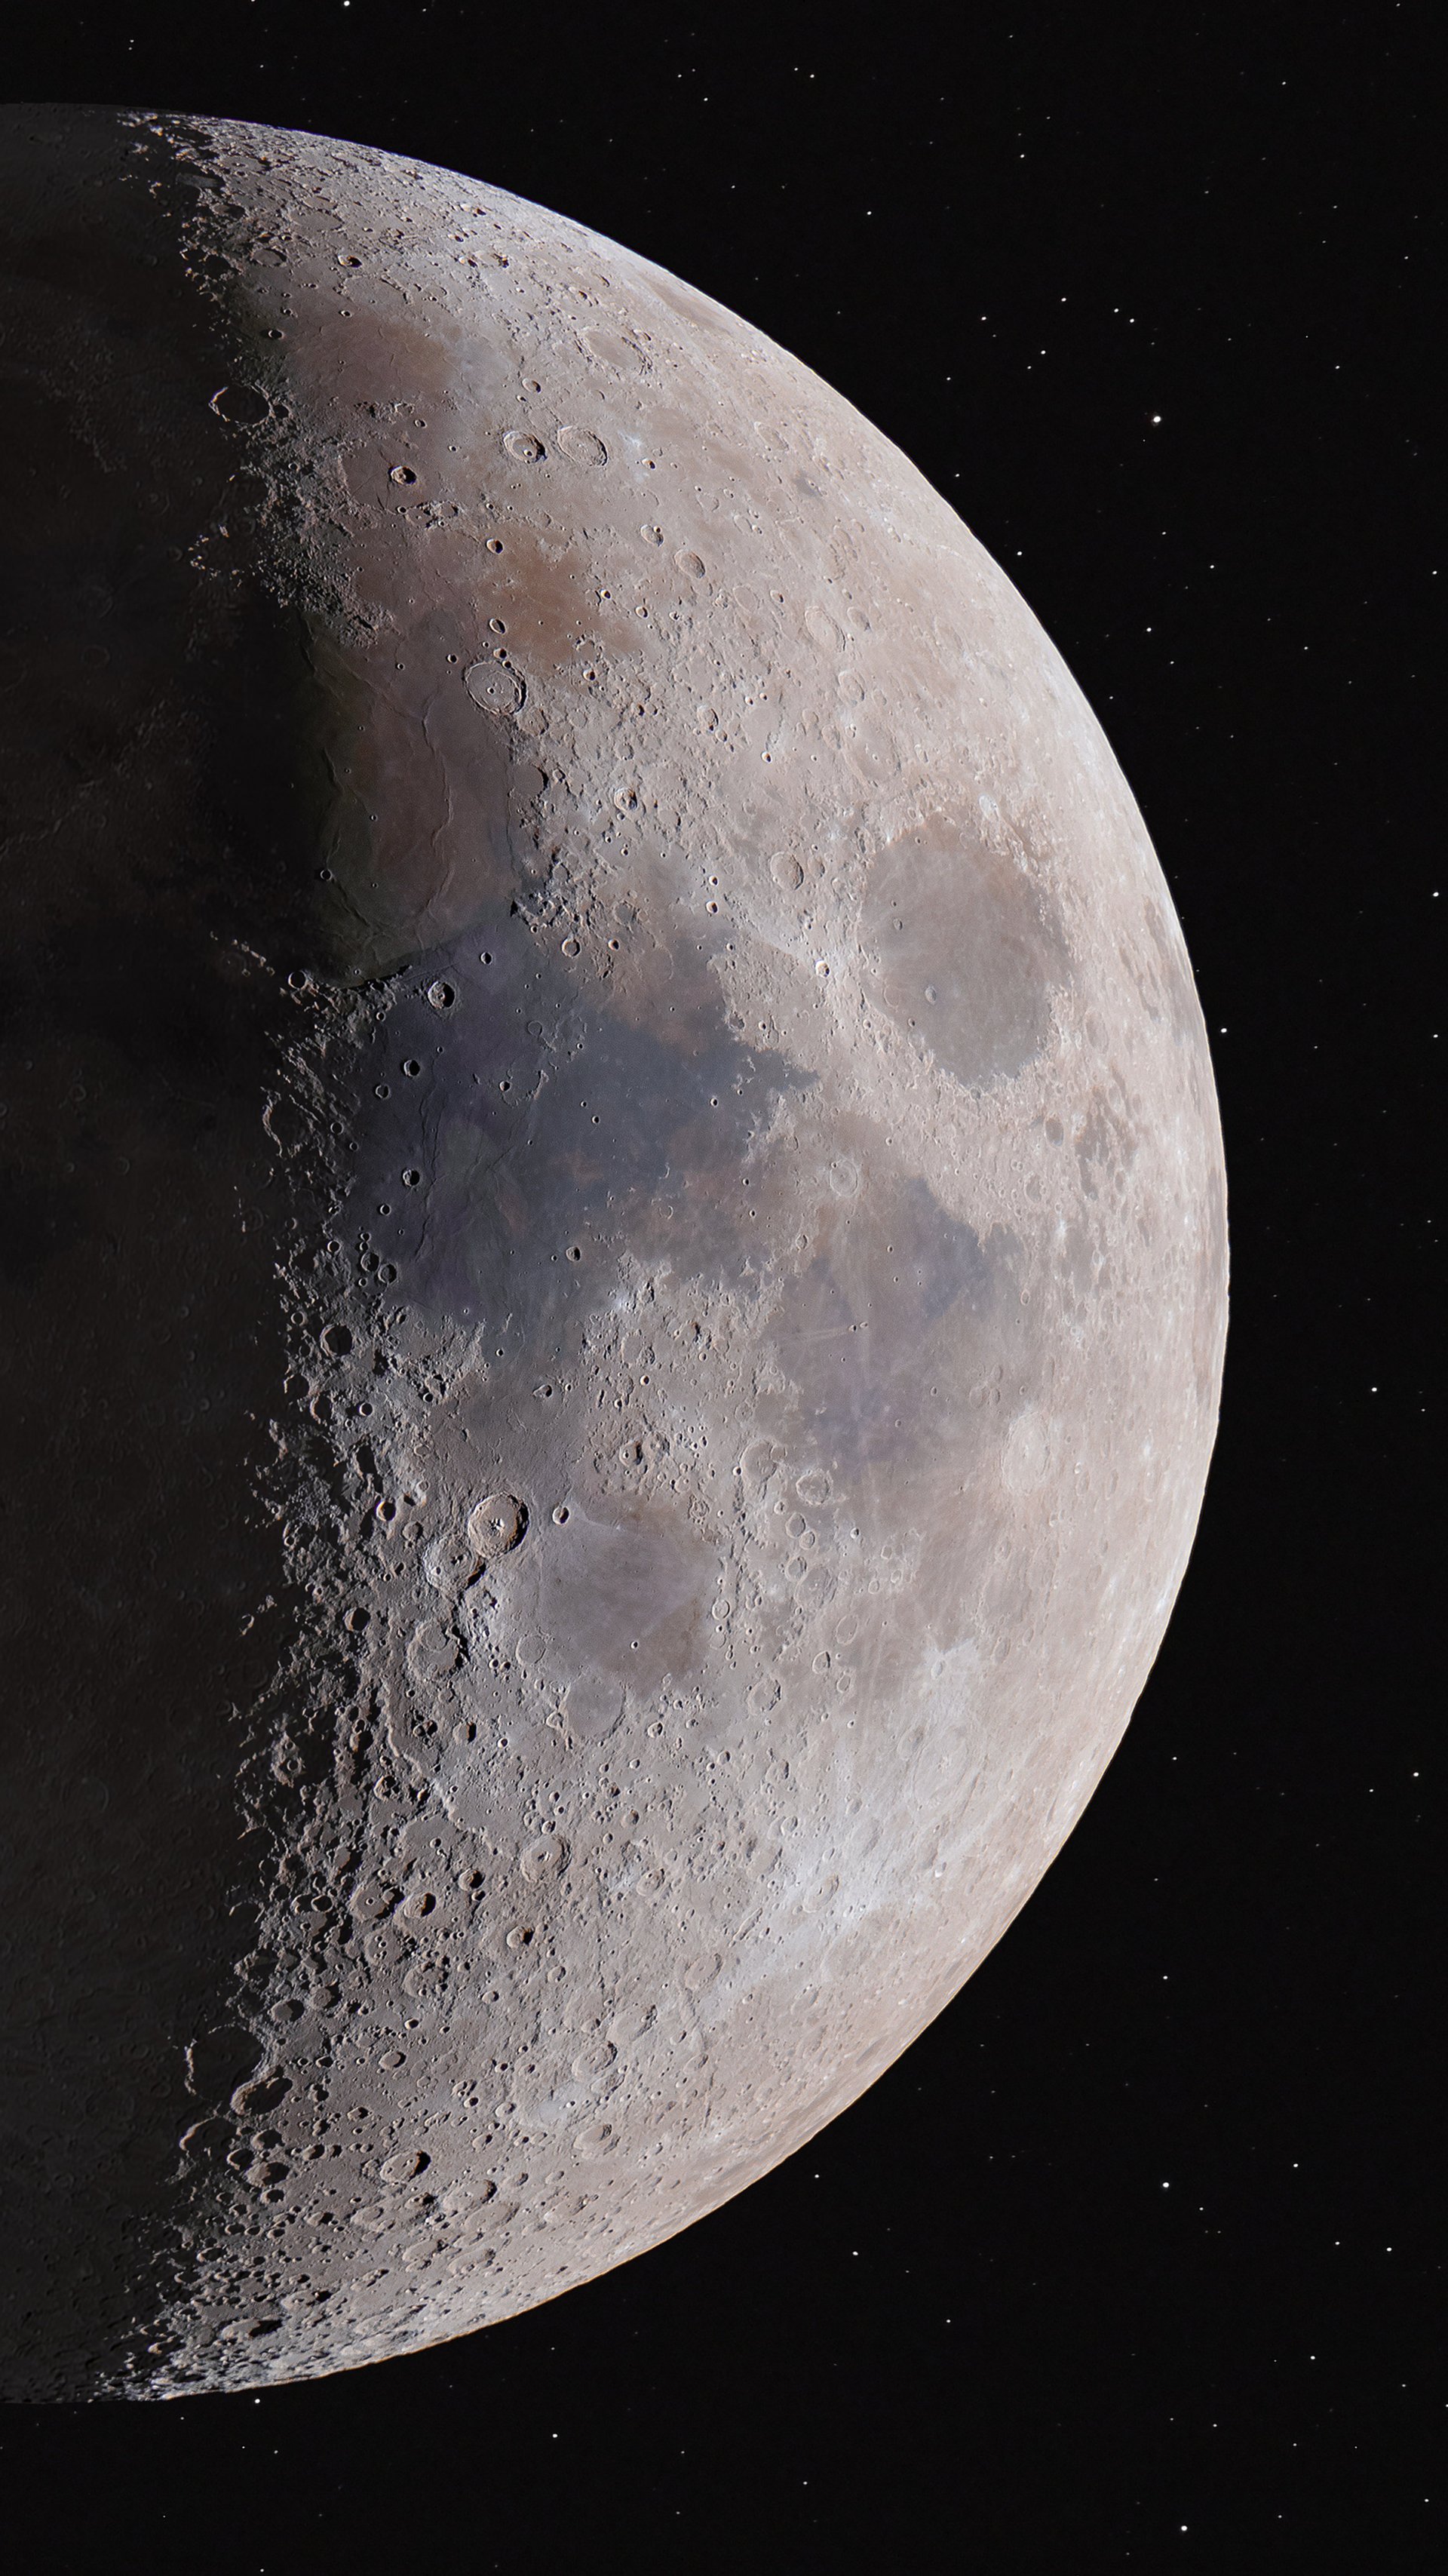 Nur eine Seite des Mondes ist hell beleuchtet, auf ihr sind Mondkrater zu sehen. Die andere Seite ist dunkel.